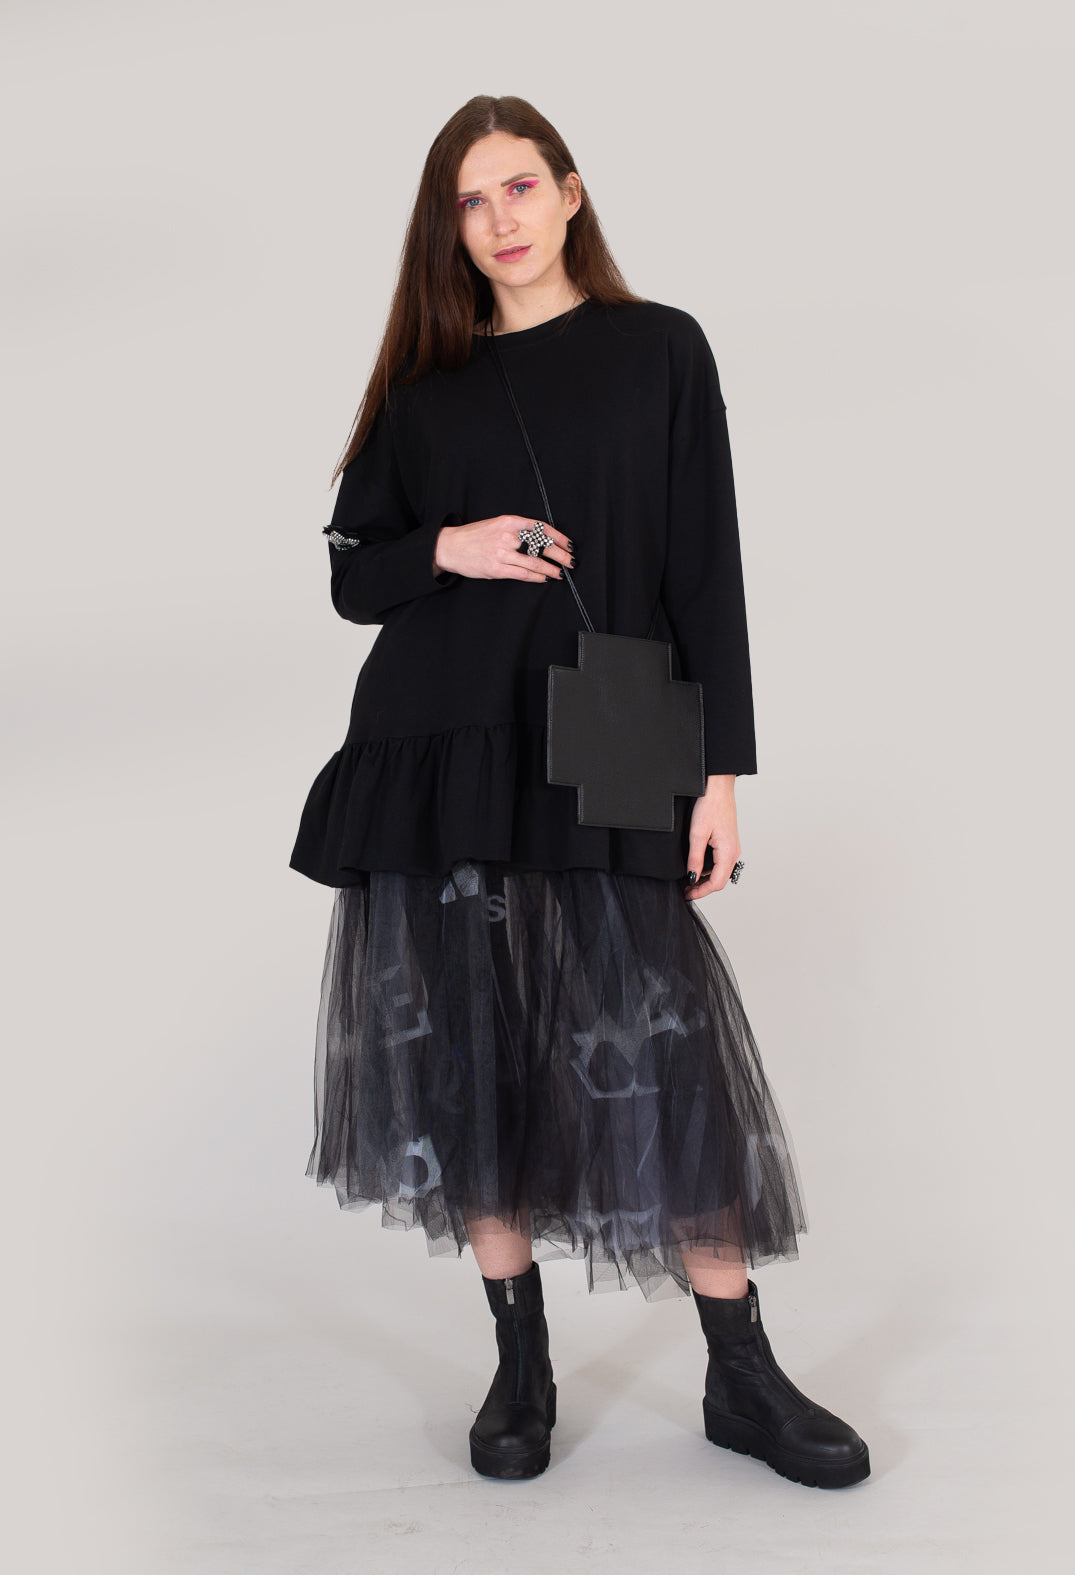 Go Netted Skirt in Black